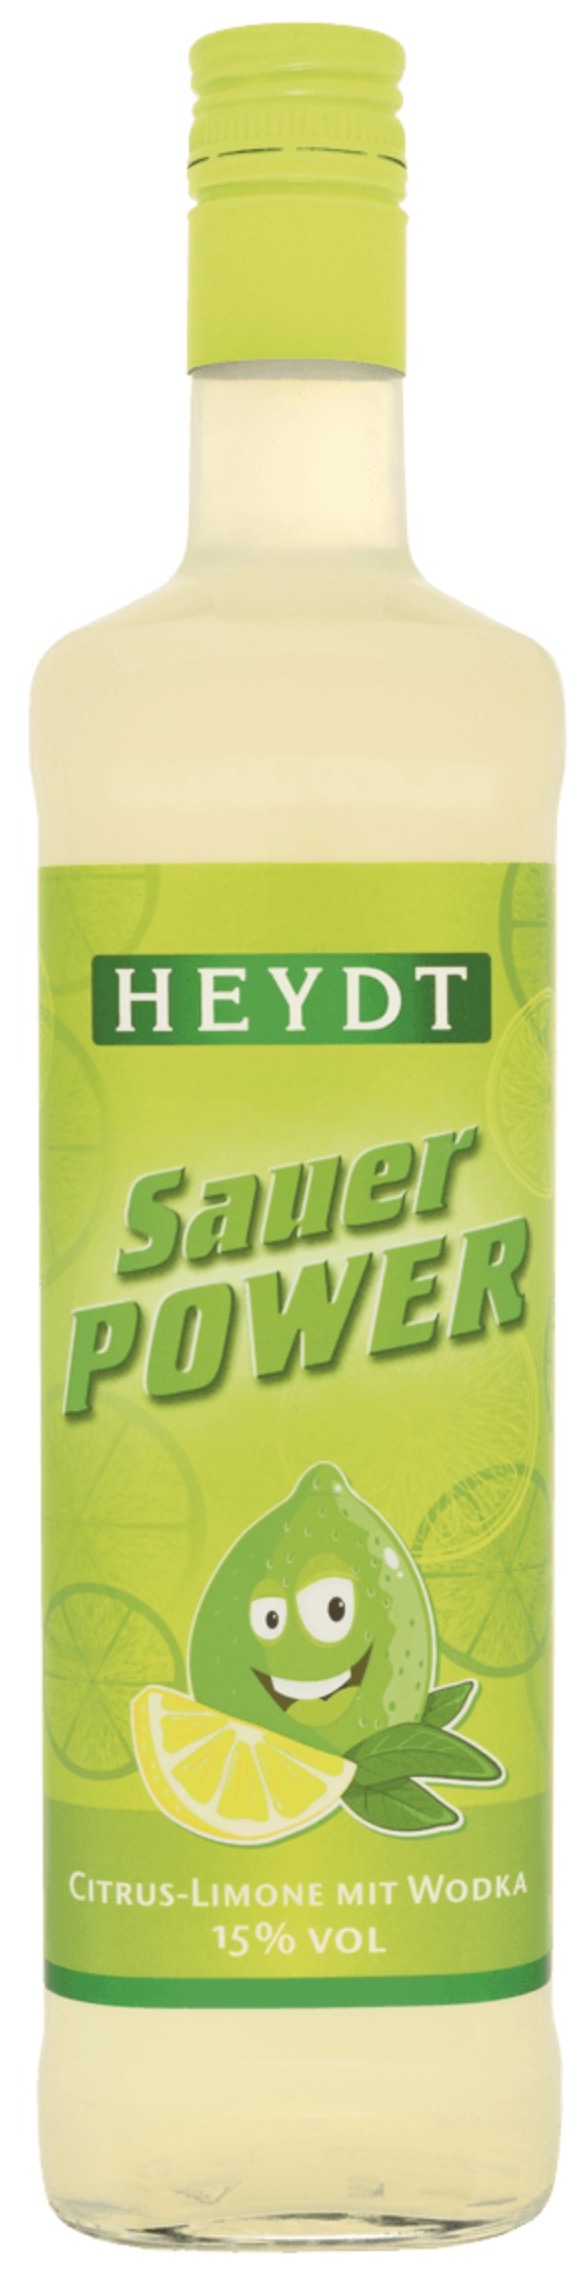 Heydt Sauer Power Citrus-Limone mit Wodka 15% 0,7L